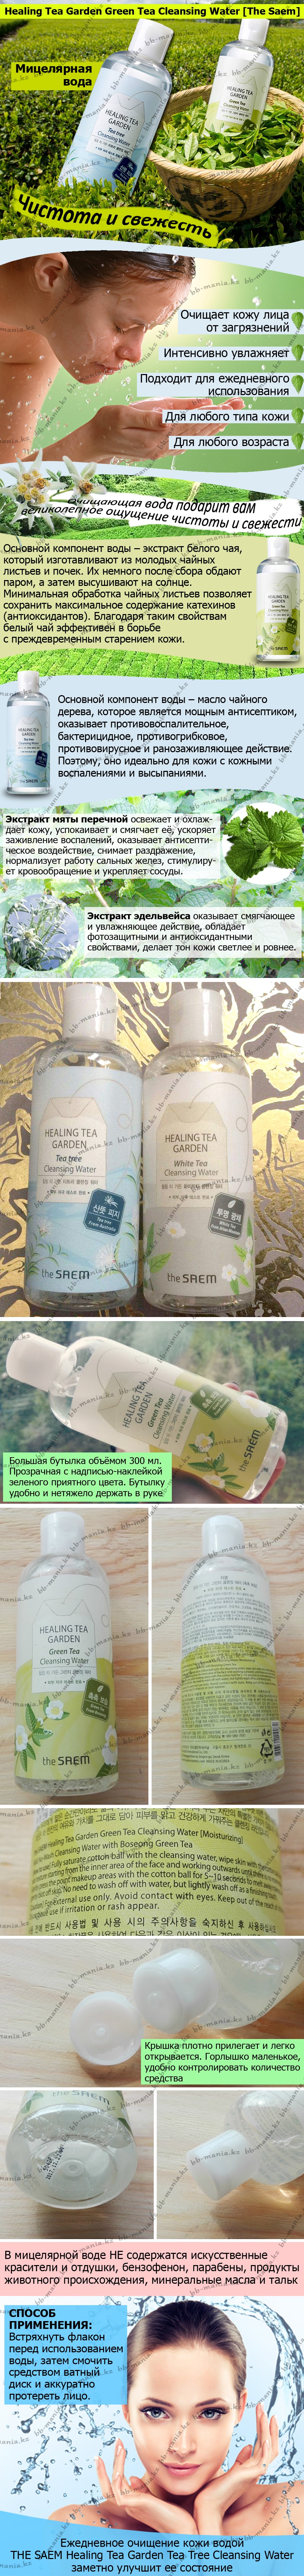 Healing-Tea-Garden-Green-Tea-Cleansing-Water-[The-Saem]-bbmania-min